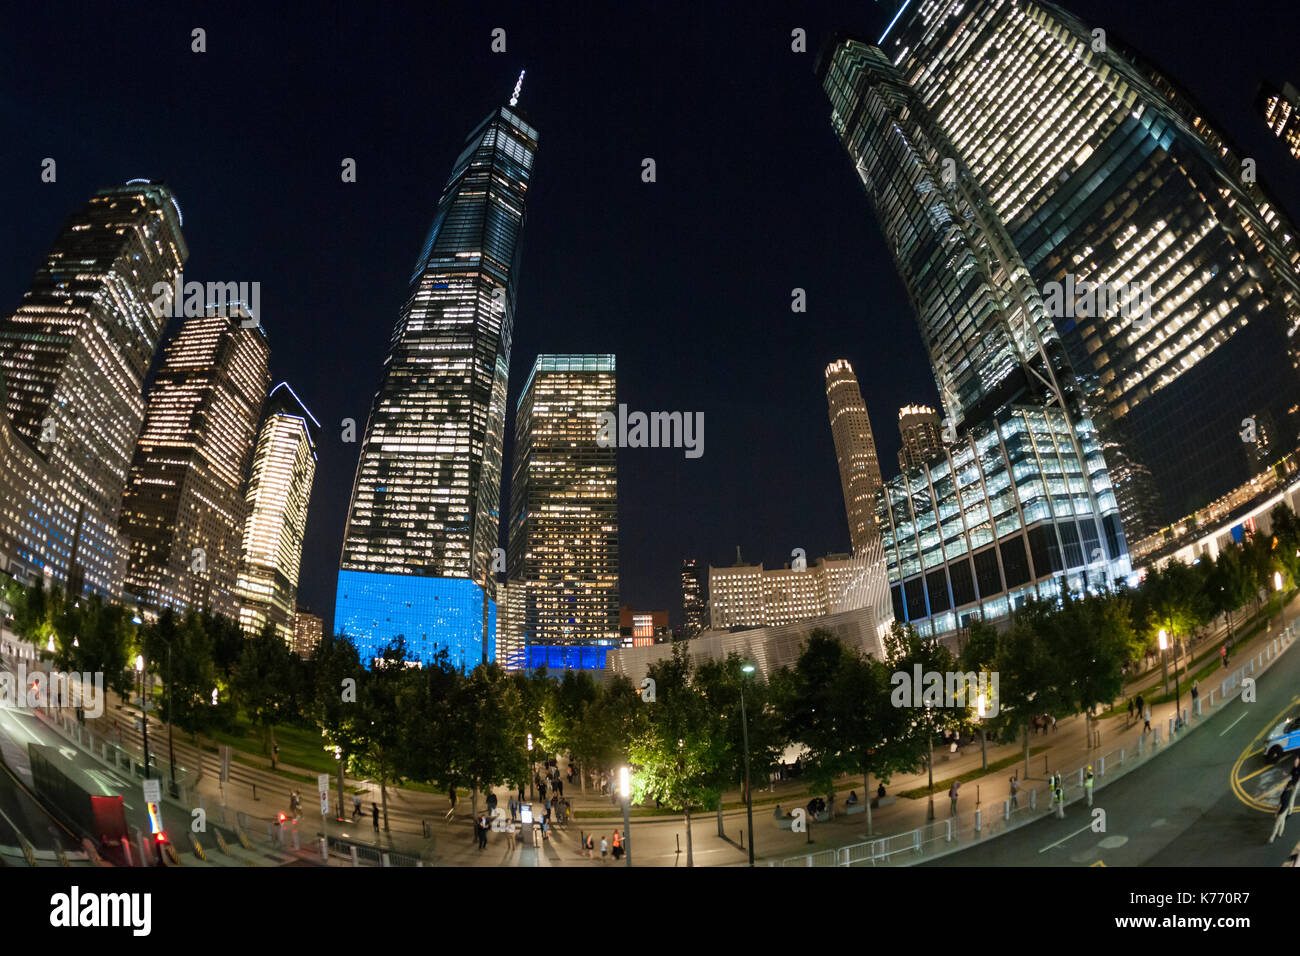 El one world Trade Center iluminado en azul con el 9/11 memorial en Nueva York el lunes, 11 de septiembre de 2017 en el 16º aniversario de los atentados del 11 de septiembre de 2001. (© Richard b. Levine) Foto de stock